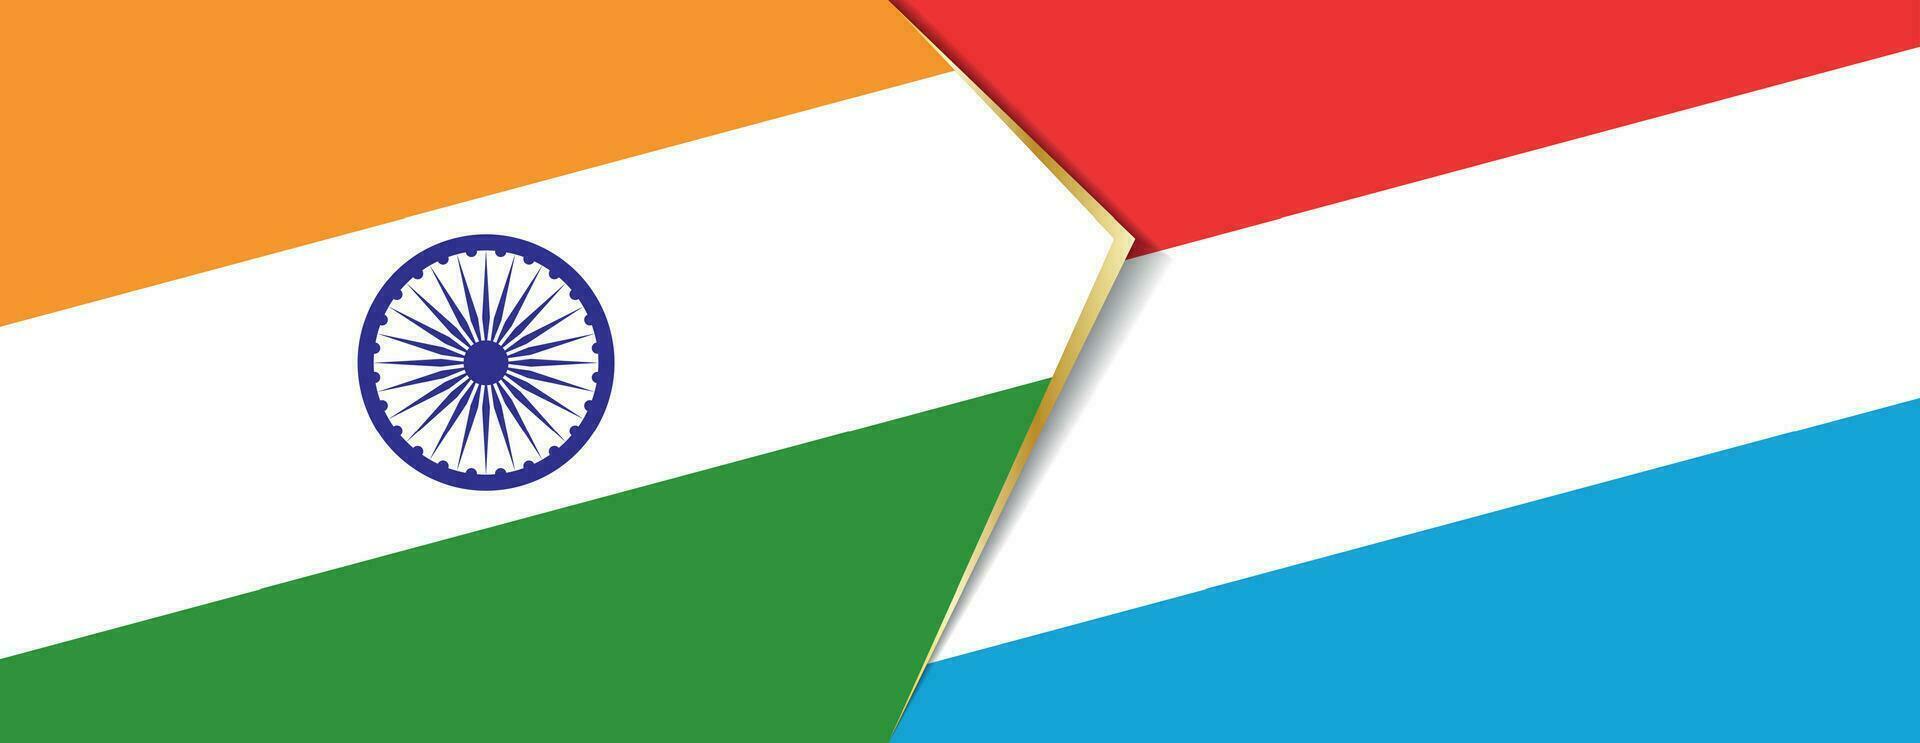 India e lussemburgo bandiere, Due vettore bandiere.